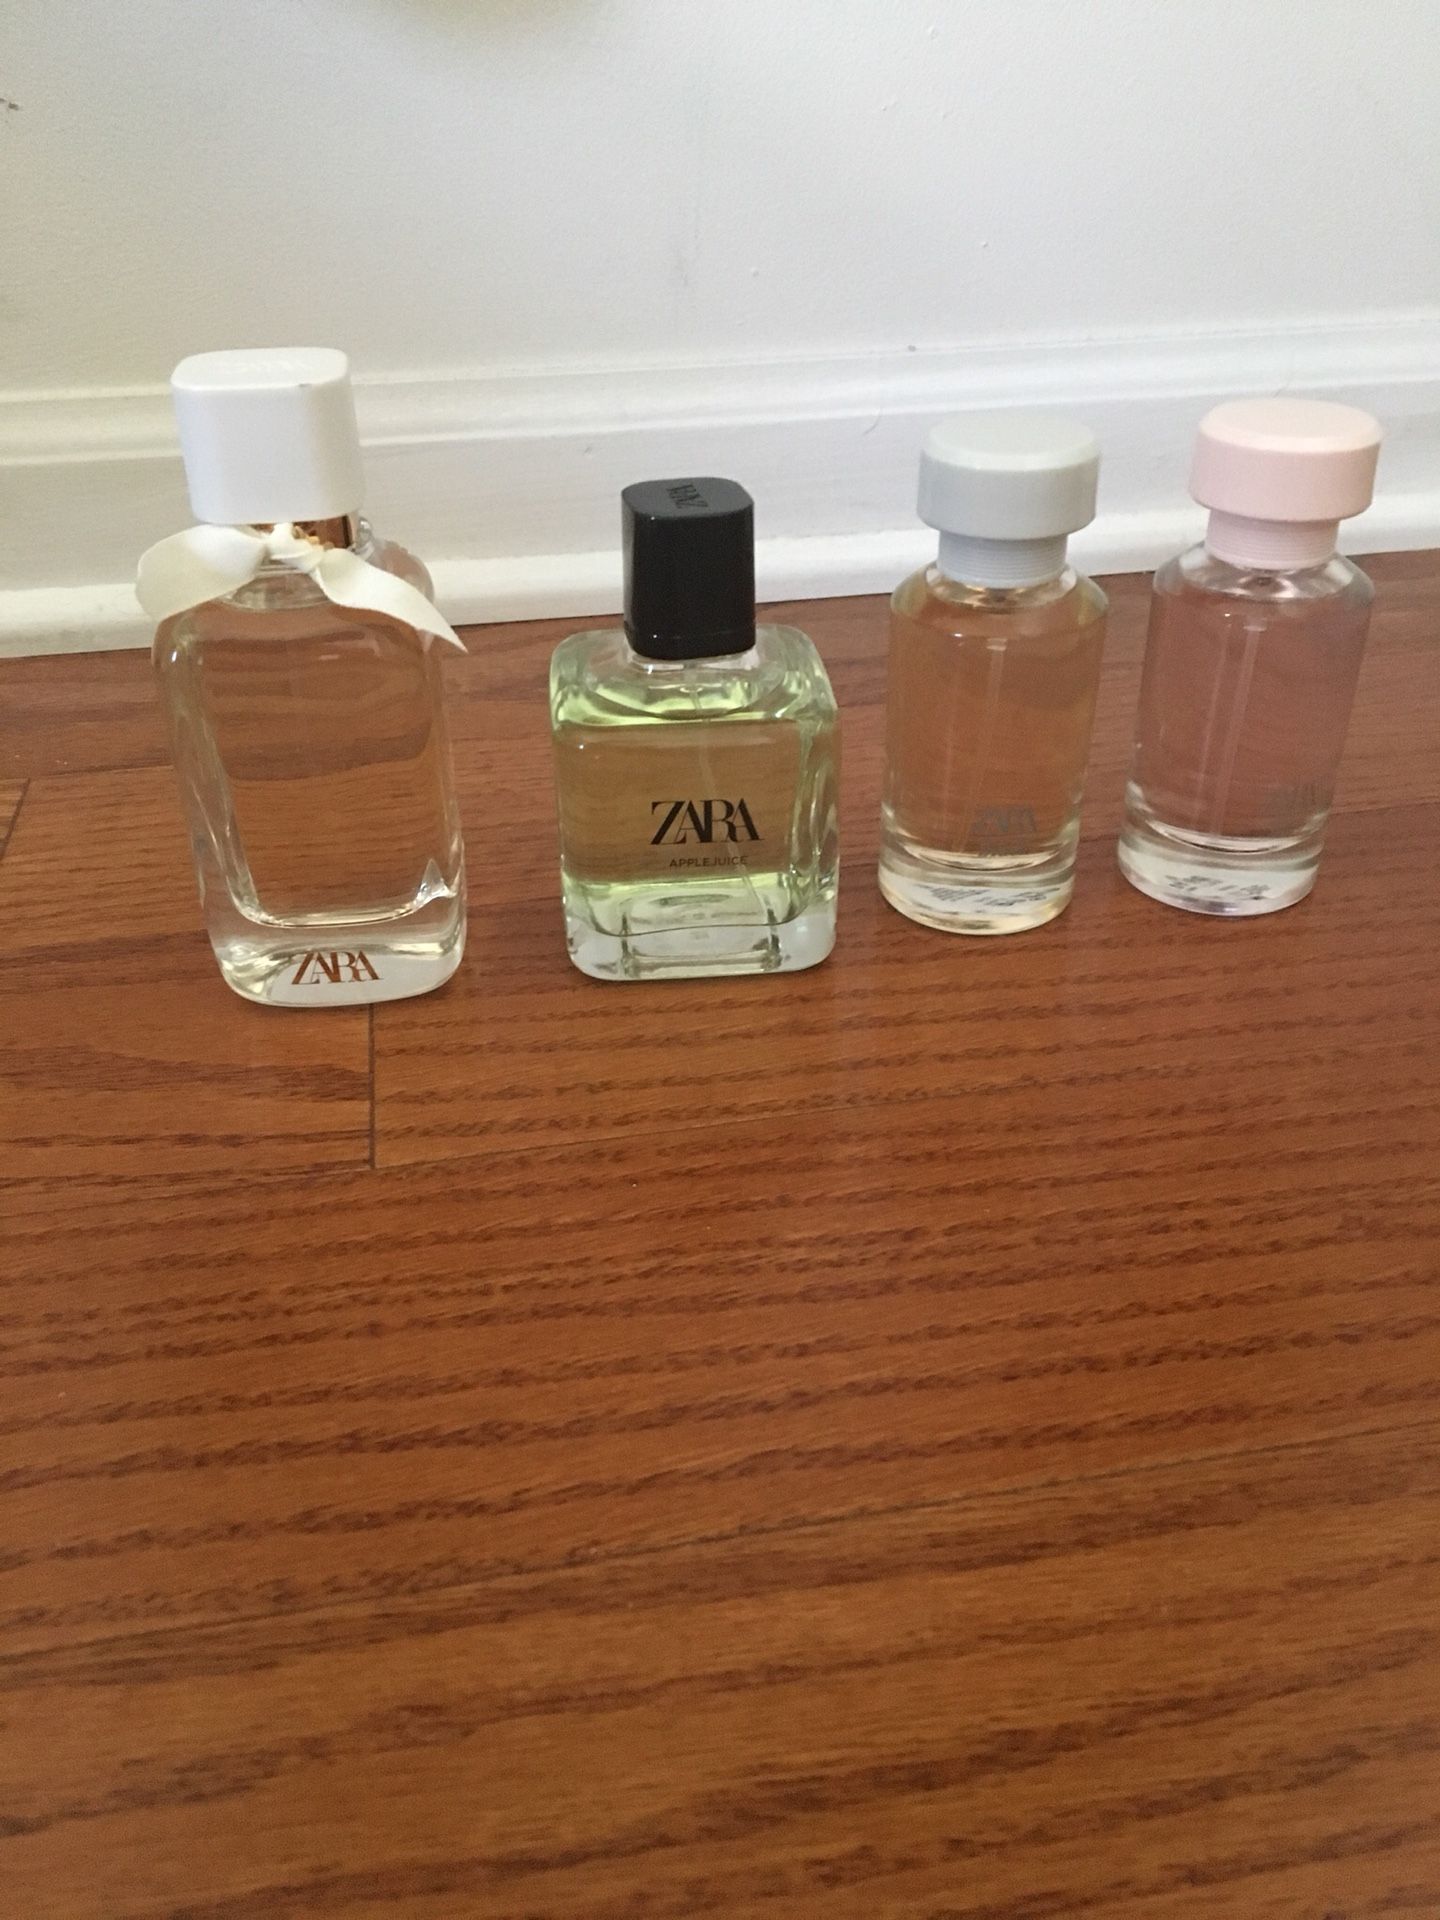 Zara Perfume Collection